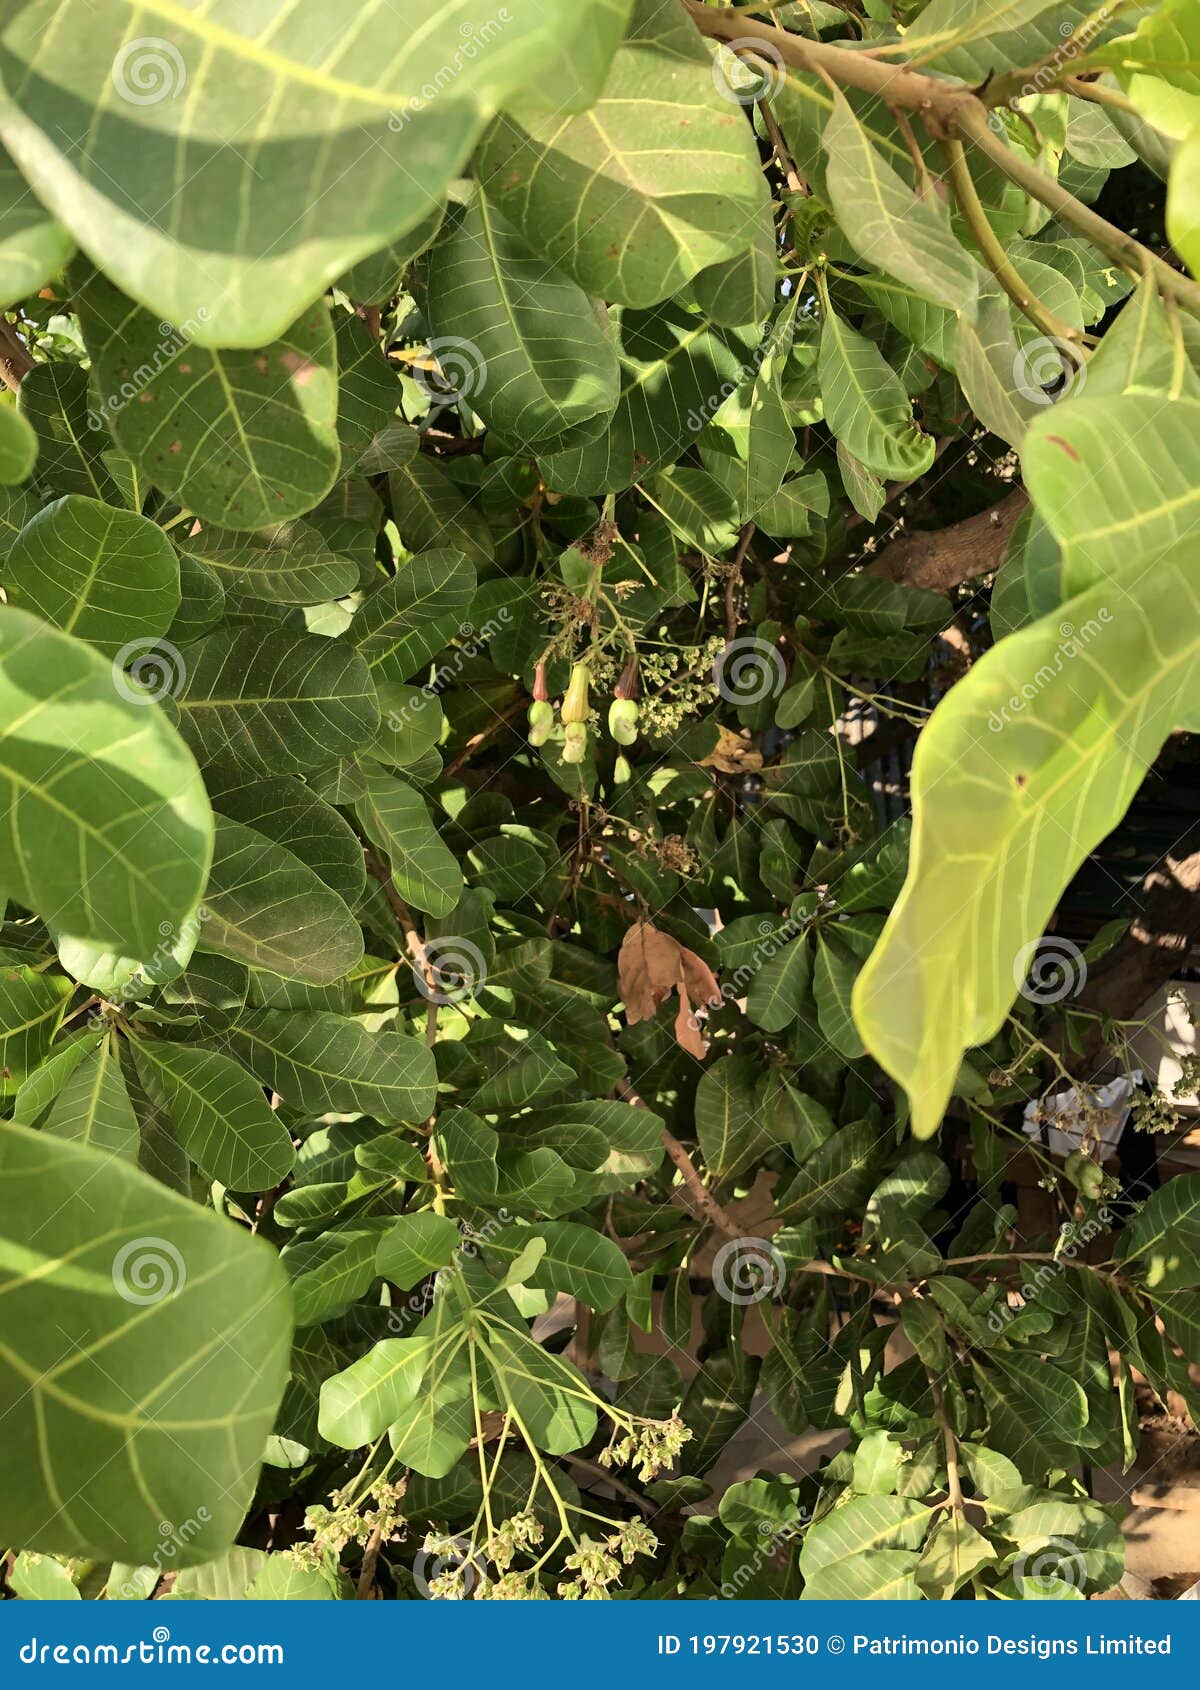 photo of fruit of cashew tree anacardium occidentale